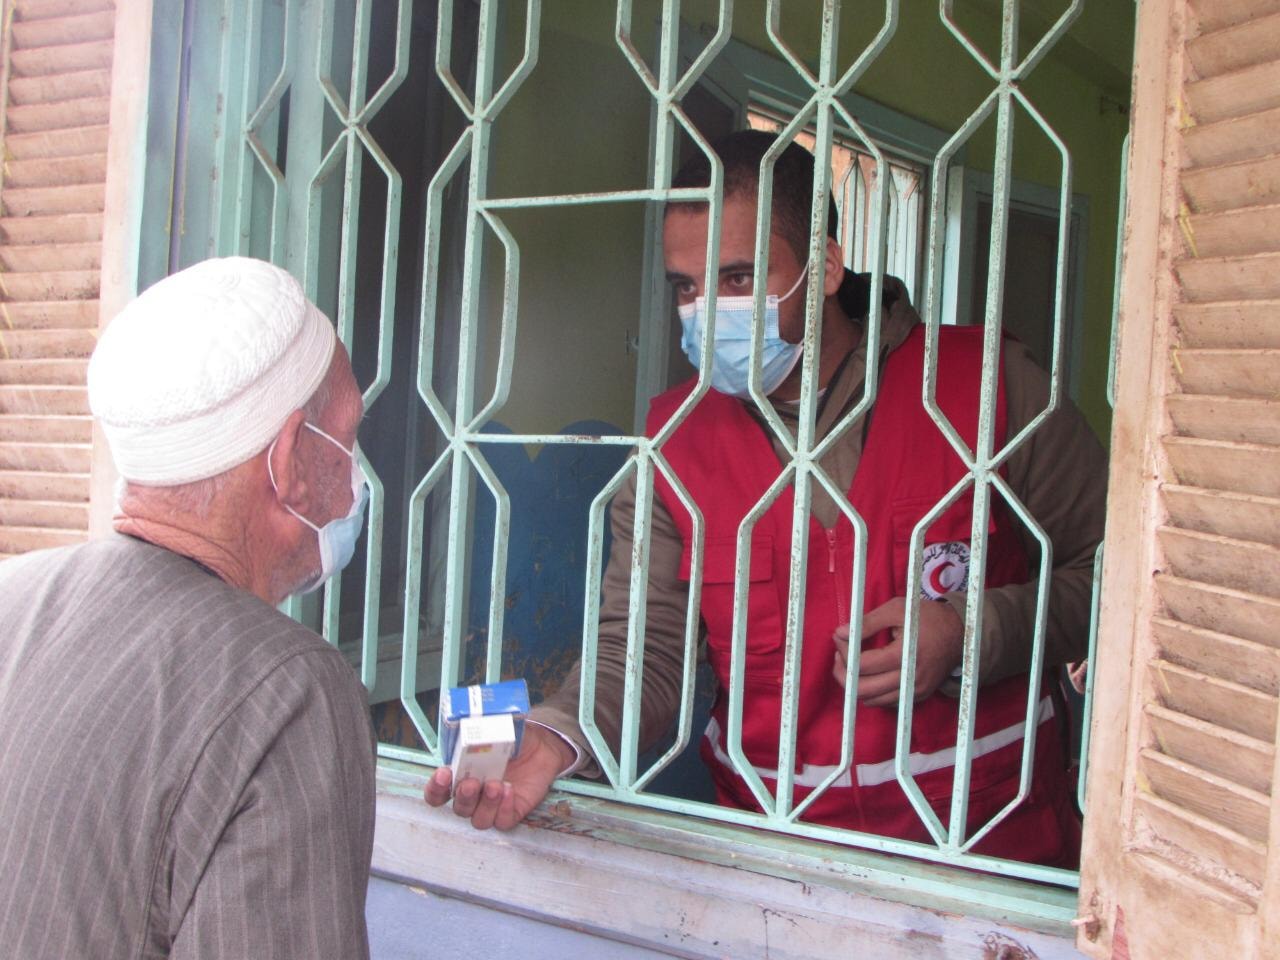   الهلال الأحمر المصري يطلق قوافل طبية في القرى الأكثر احتياجا